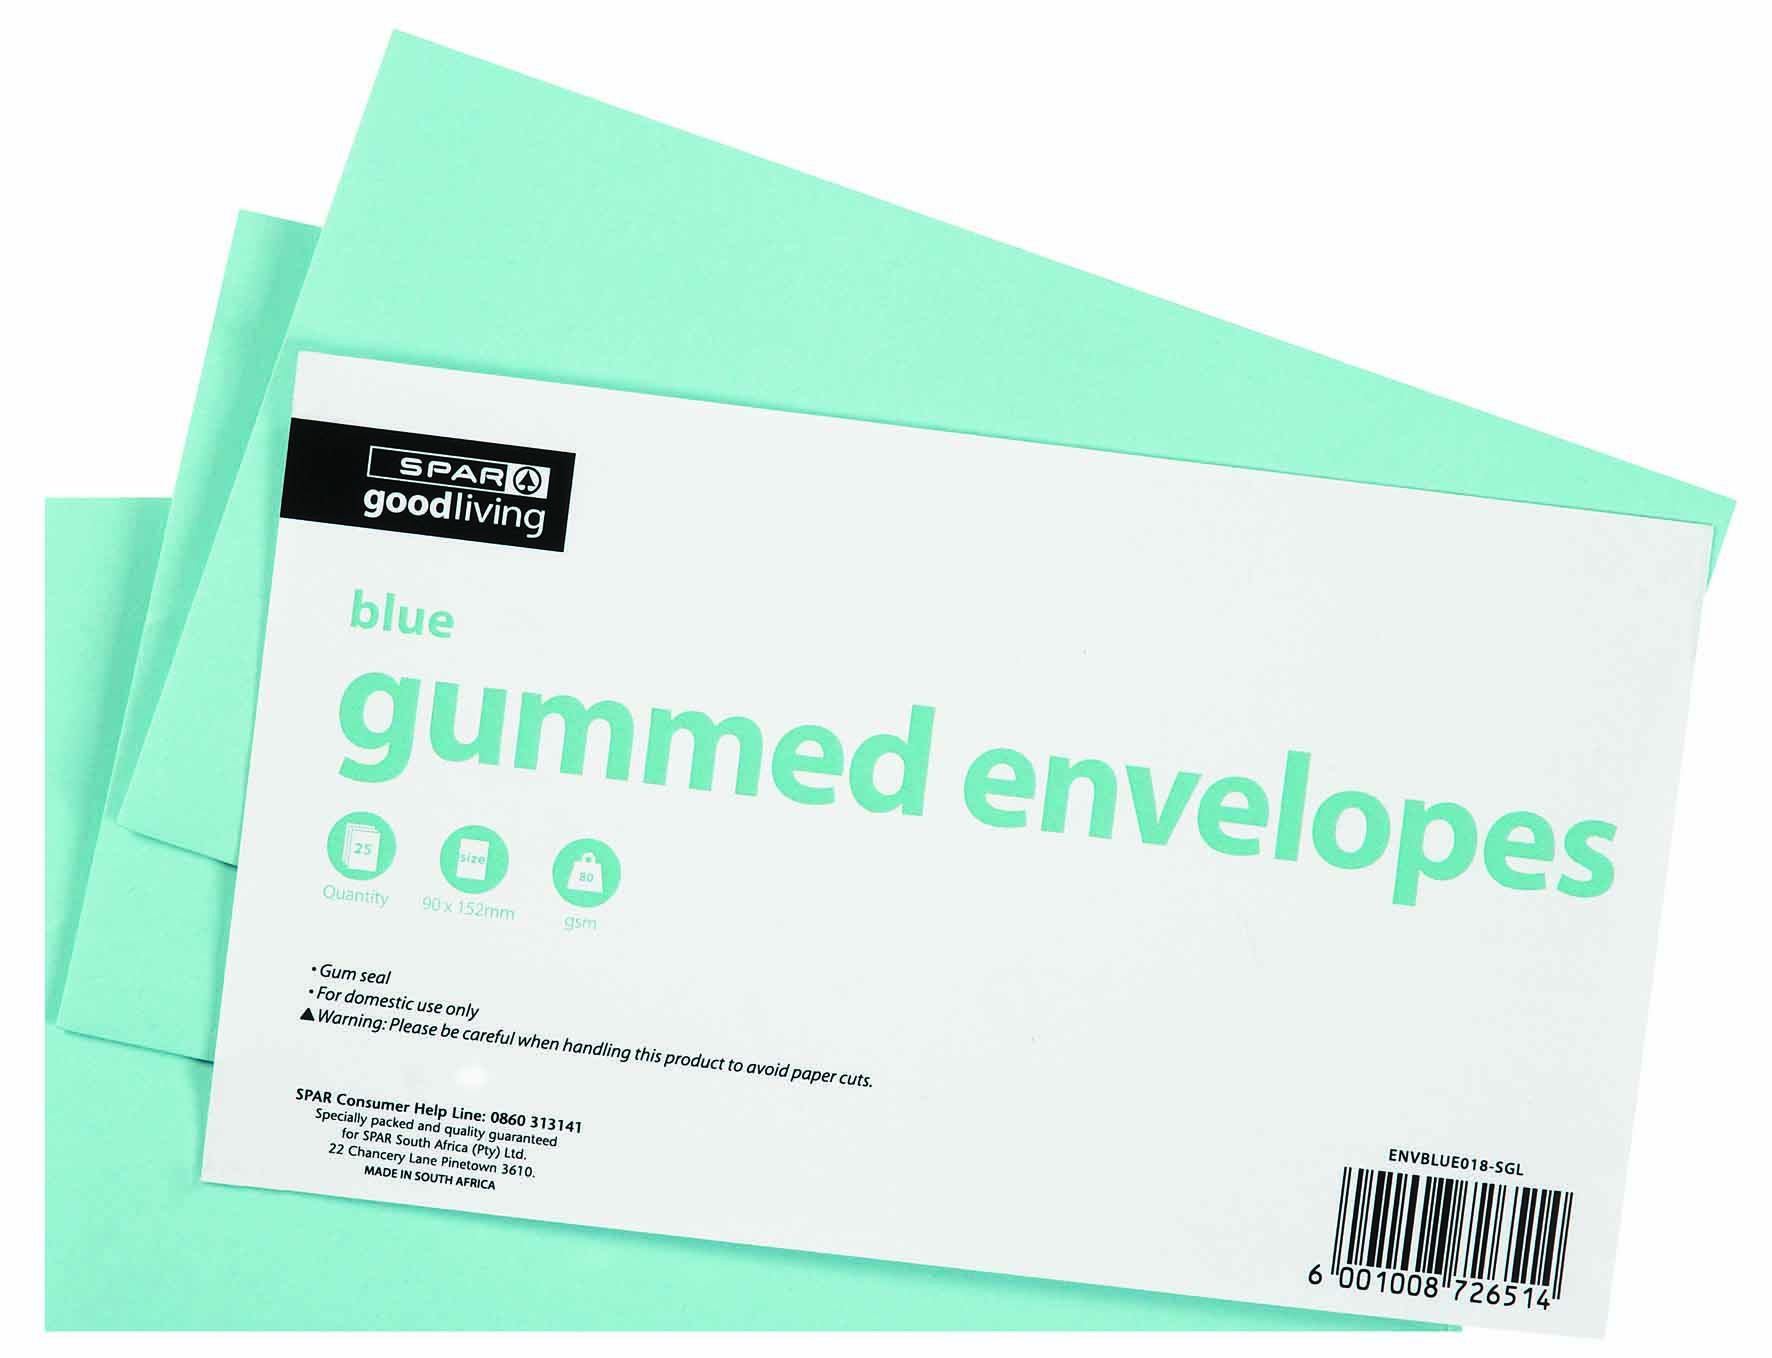 envelopes - blue gummed 90mm x 152mm 25 piece